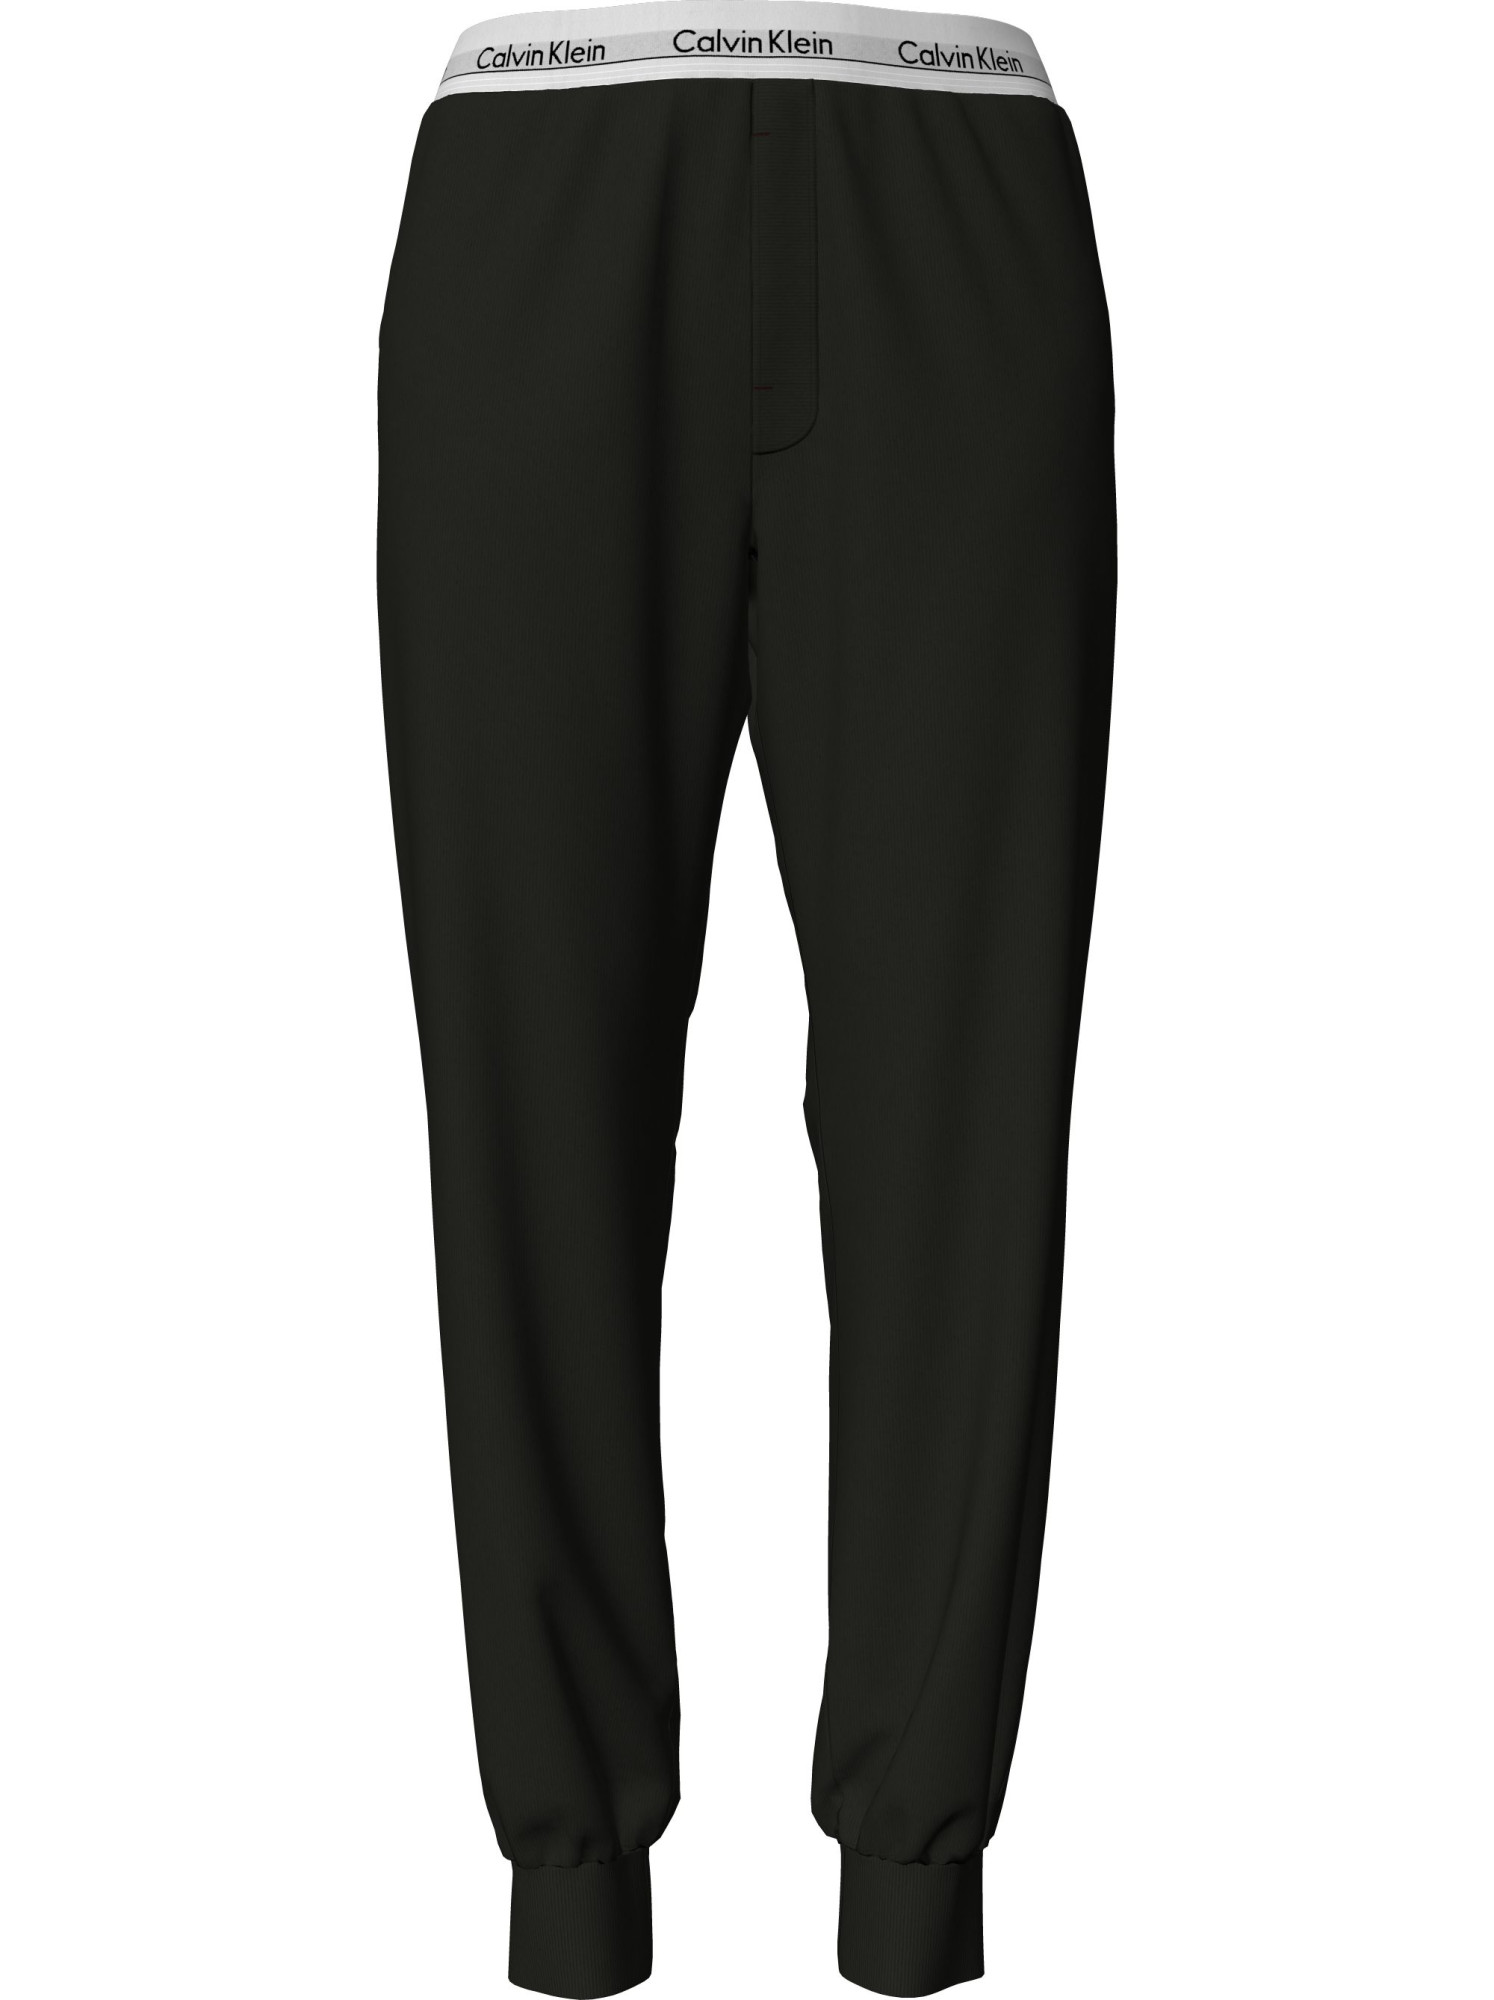 Dámské pyžamové kalhoty Pyjama Pants Modern Cotton 000QS6872EUB1 černá - Calvin Klein M